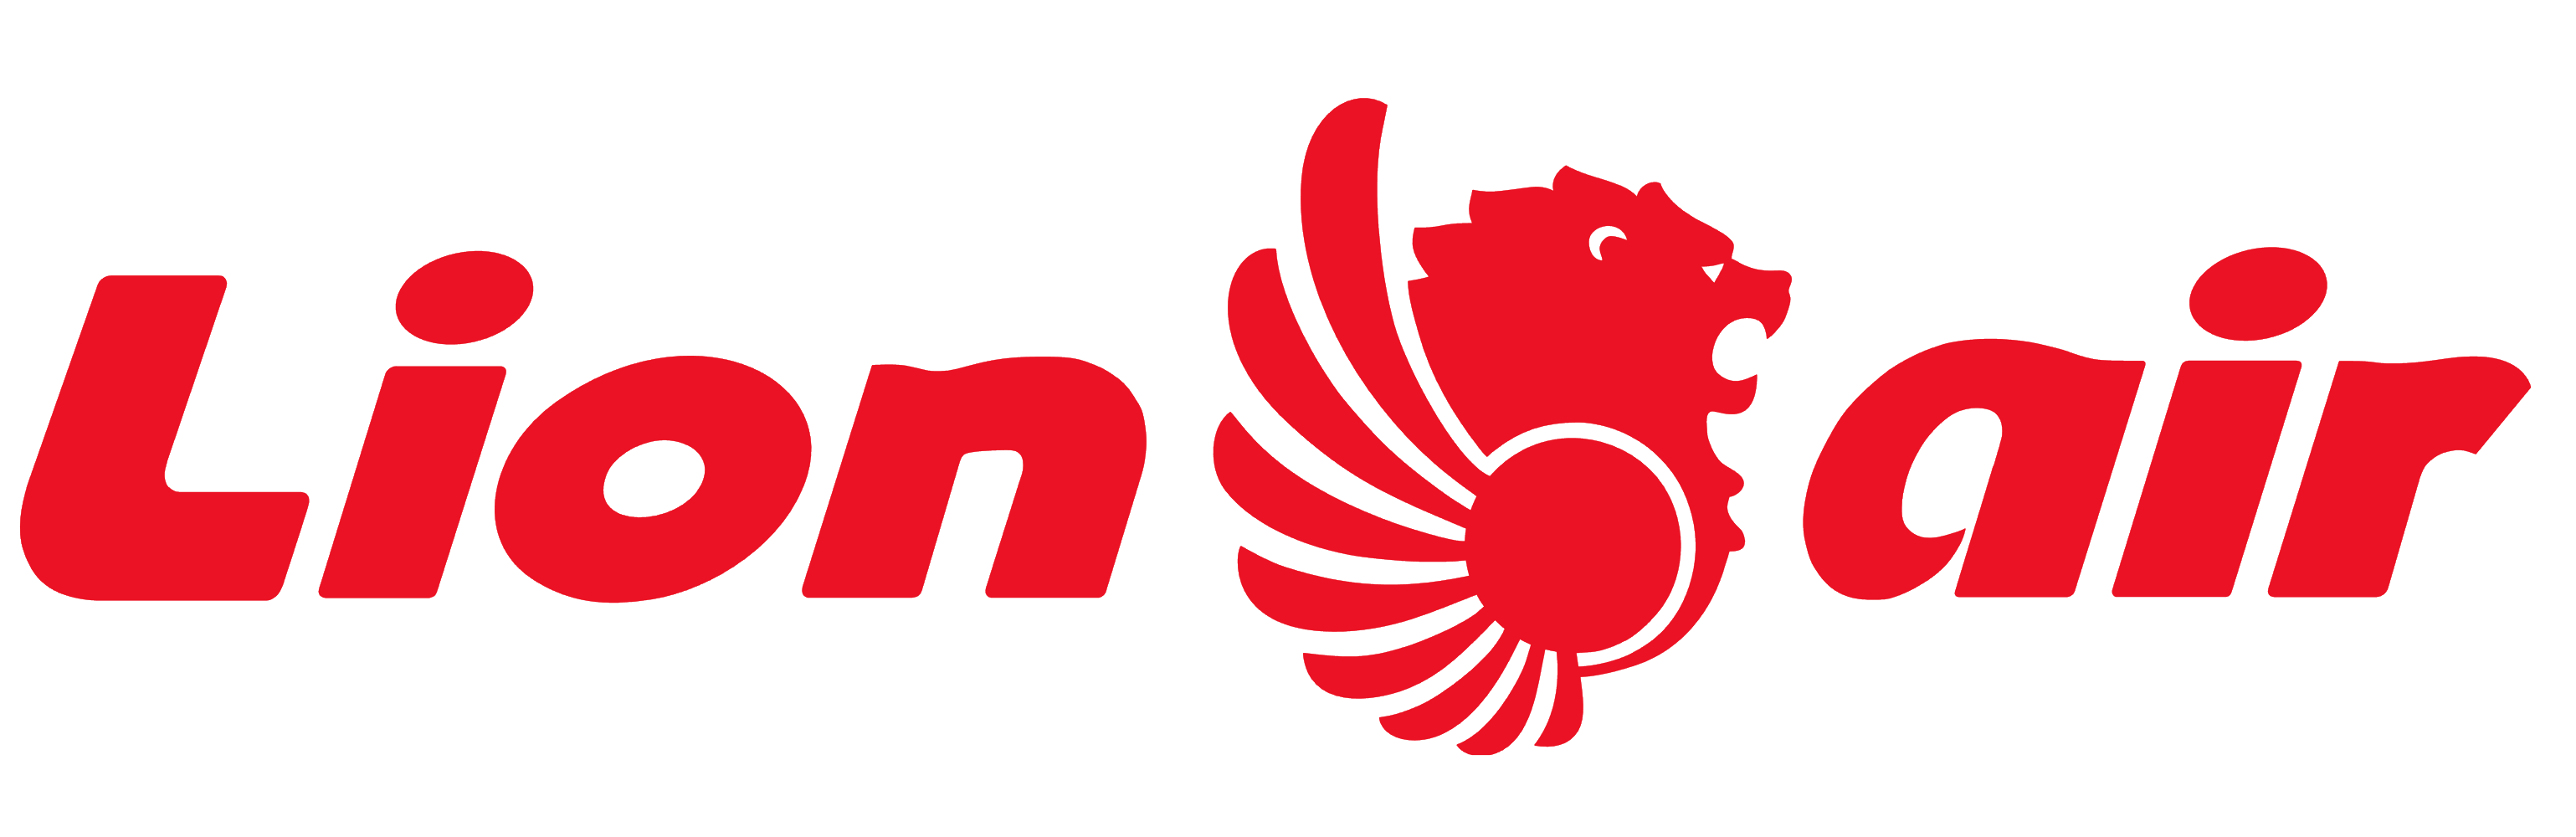 Lion_Air_logo